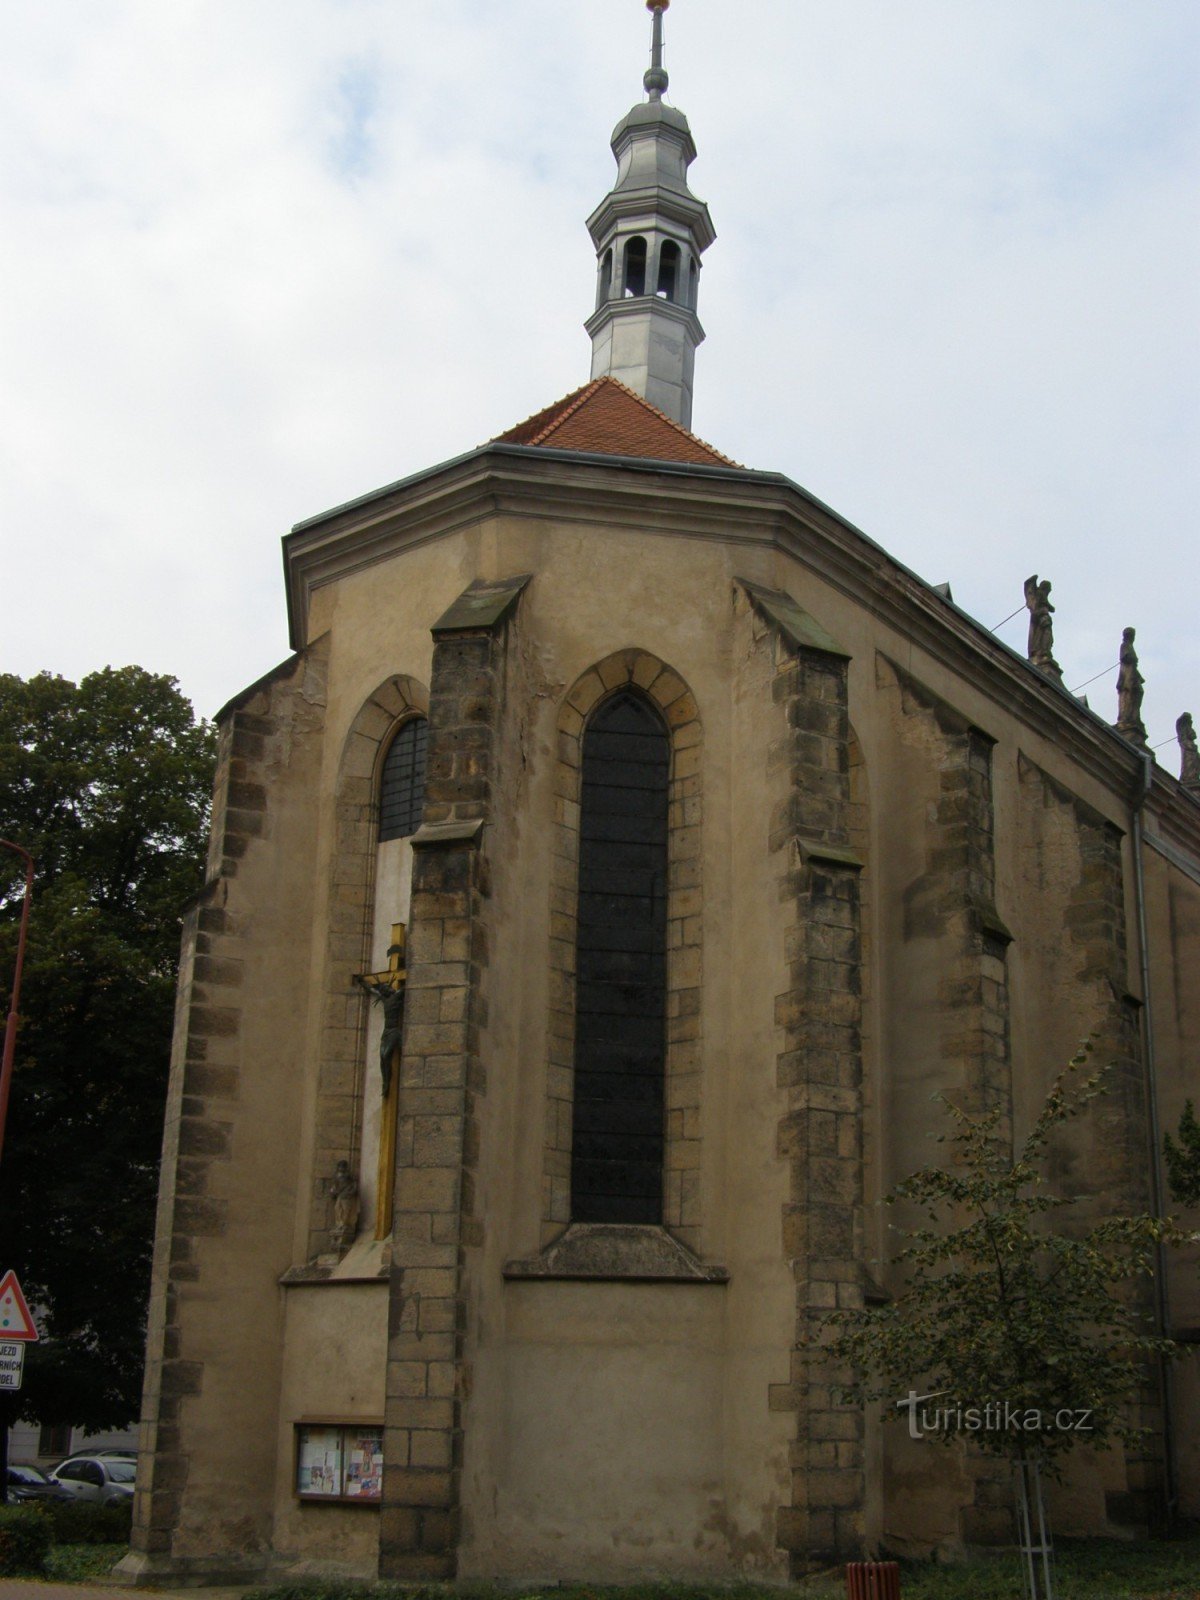 Nový Bydžov - iglesia de St. Lorenzo